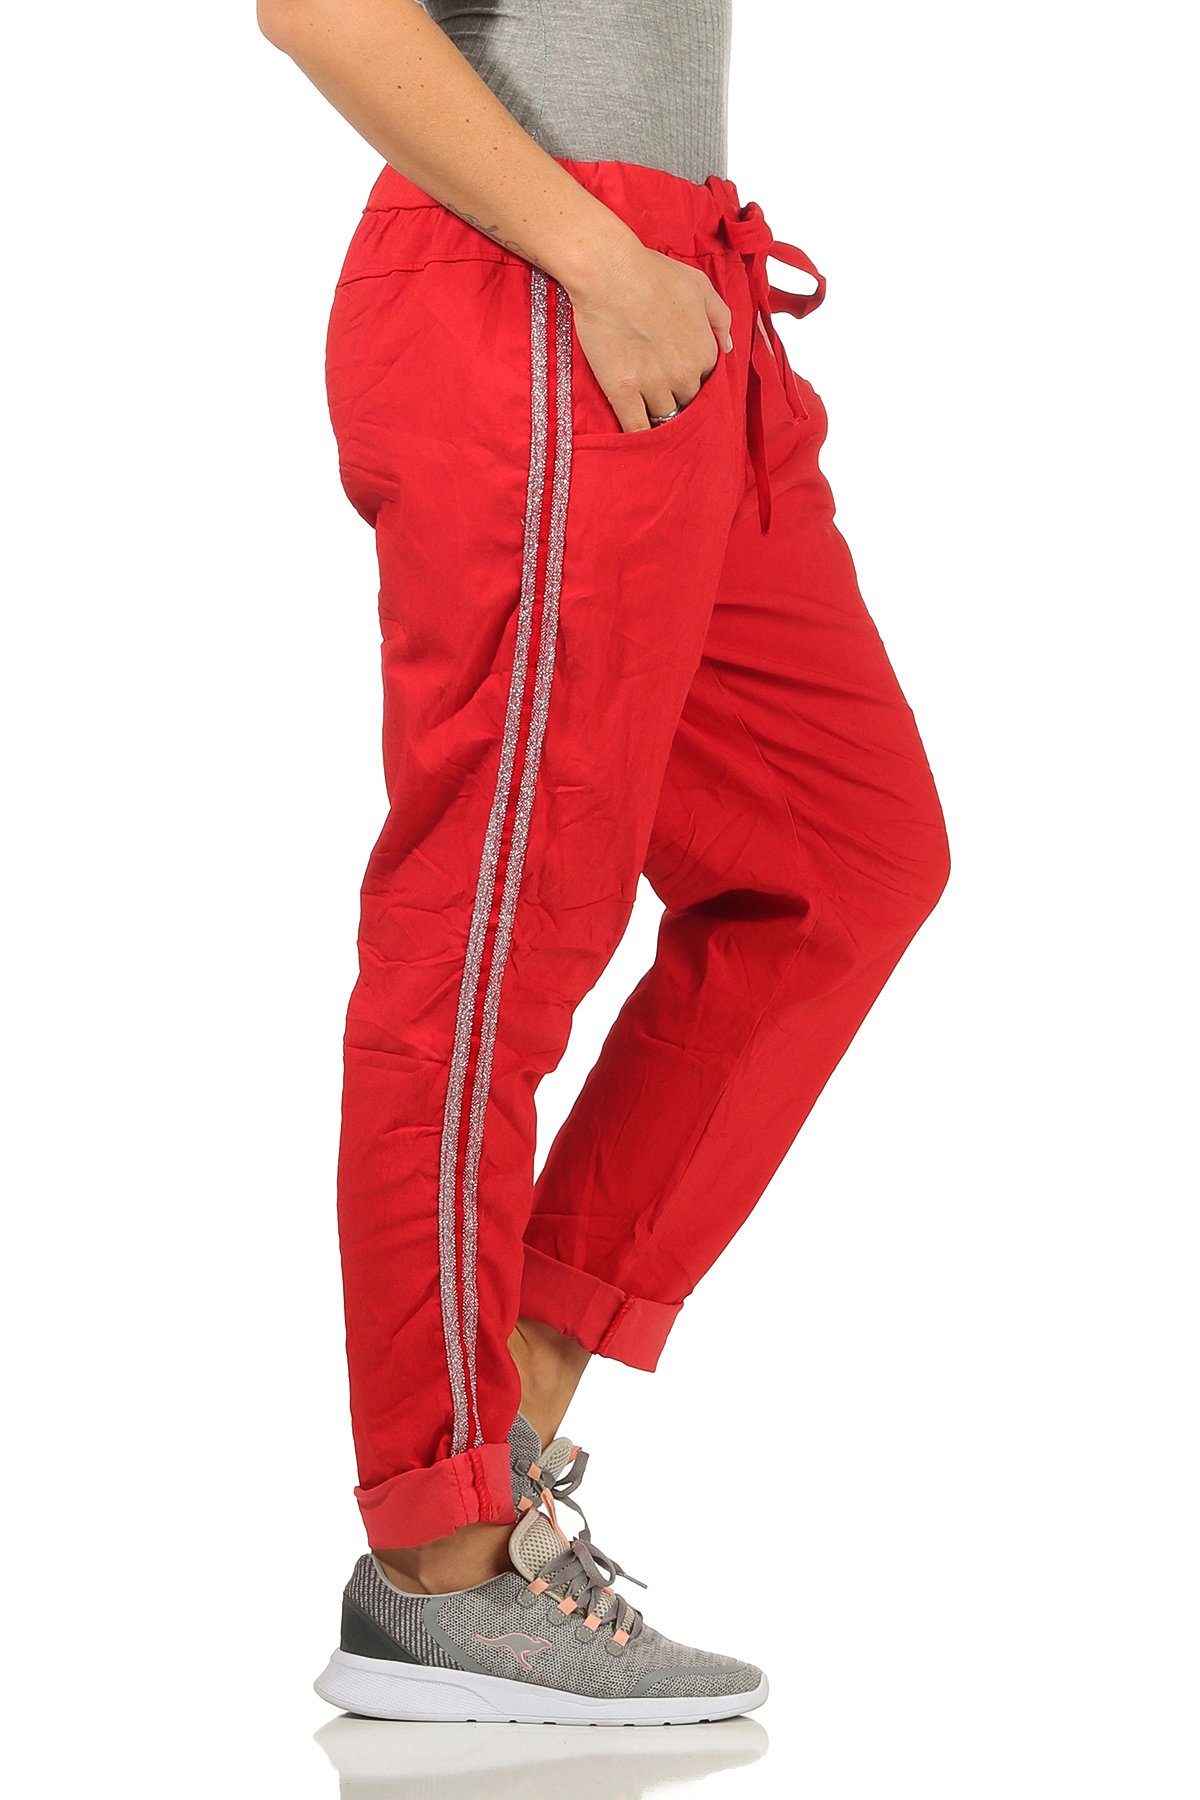 Mississhop Jogginghose Damen Silberstreifen Baumwollhose Seitlichen mit Hose M.348 Rot